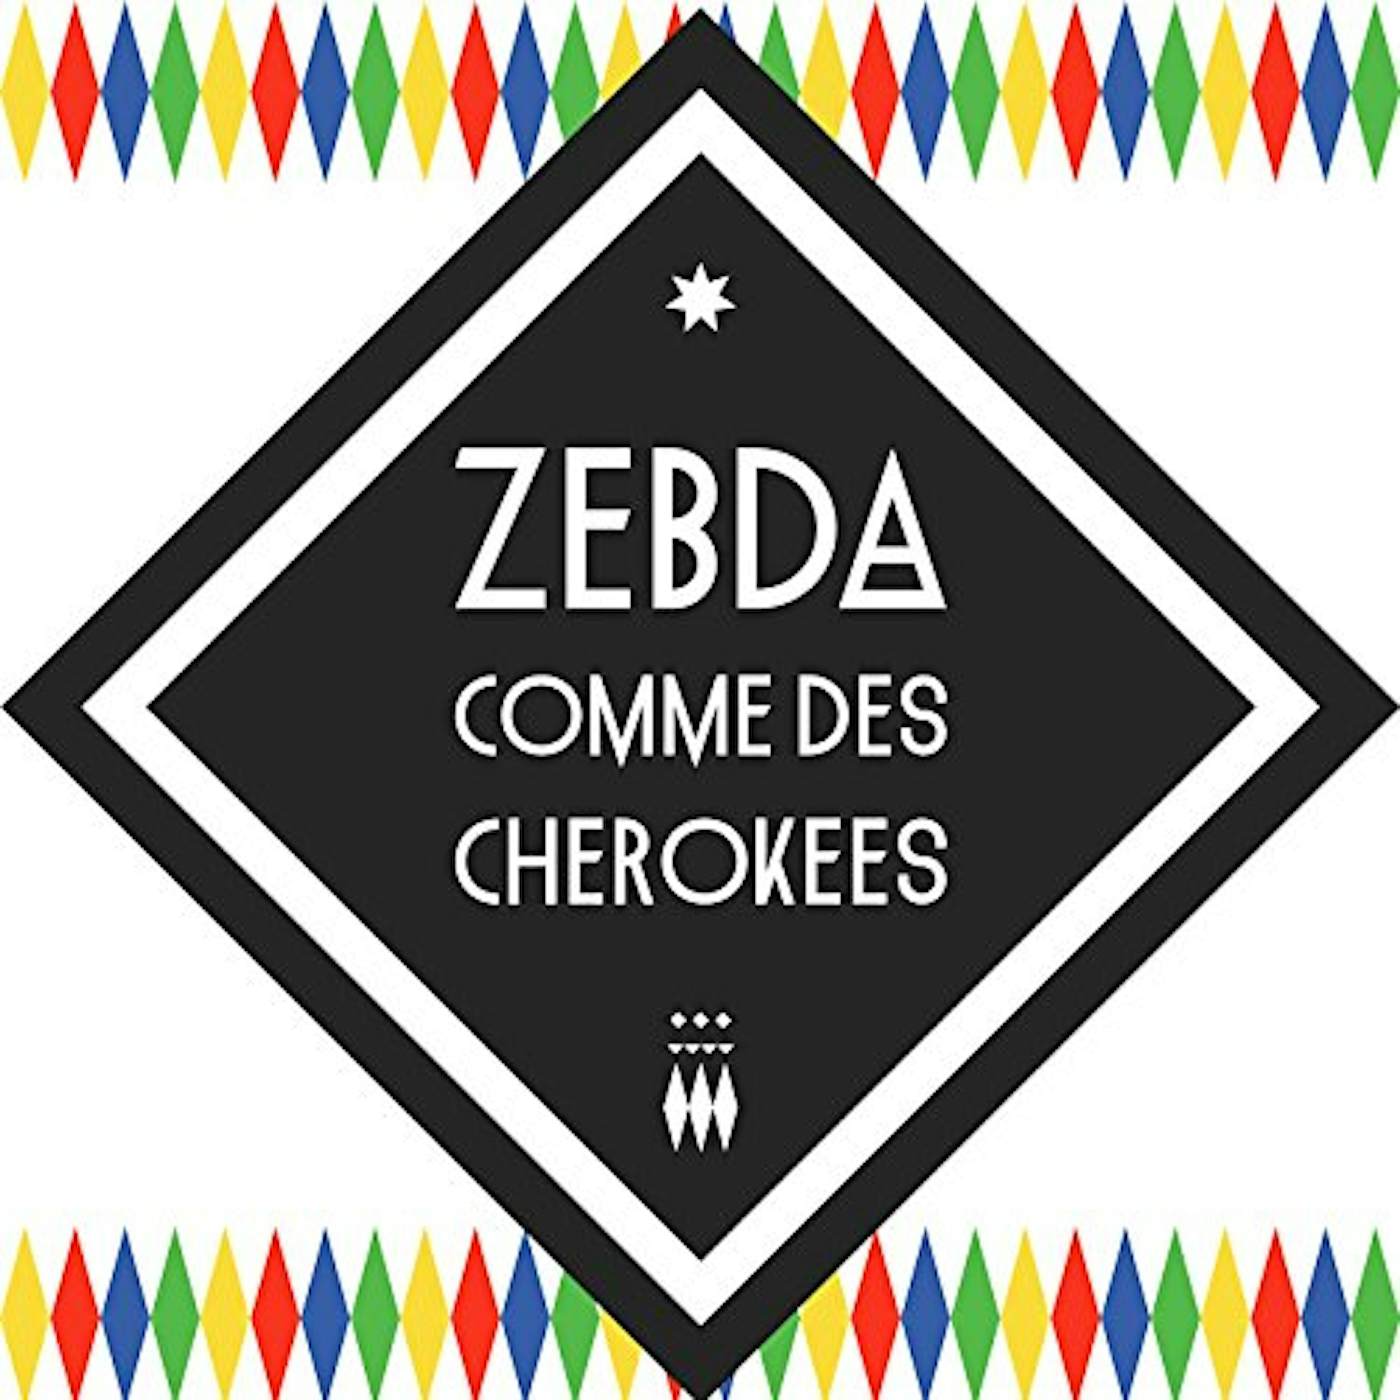 Zebda COMME DES CHEROKEES CD